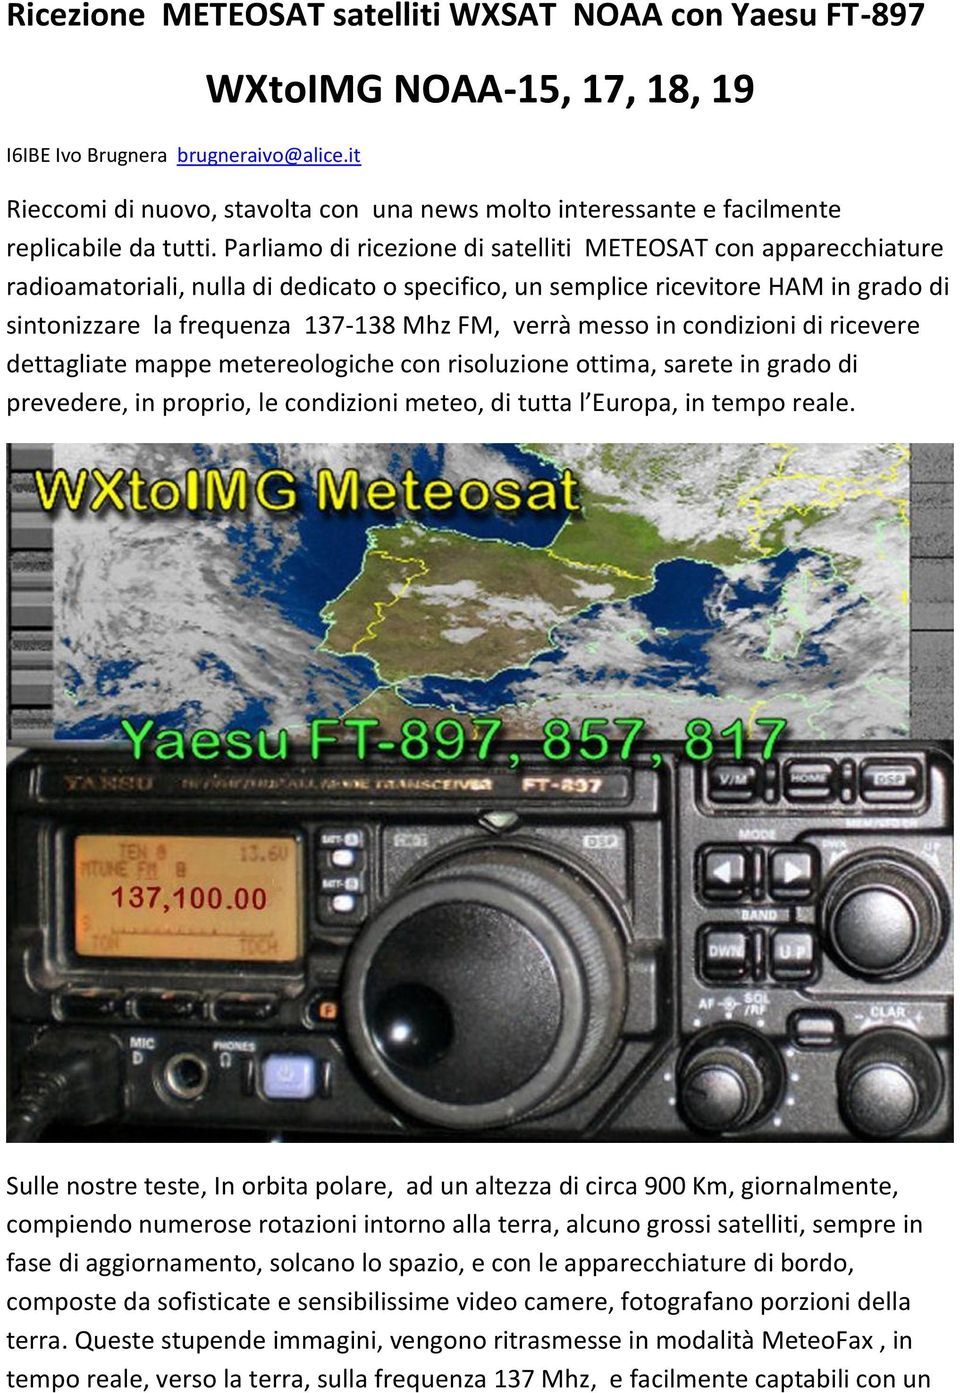 Parliamo di ricezione di satelliti METEOSAT con apparecchiature radioamatoriali, nulla di dedicato o specifico, un semplice ricevitore HAM in grado di sintonizzare la frequenza 137-138 Mhz FM, verrà